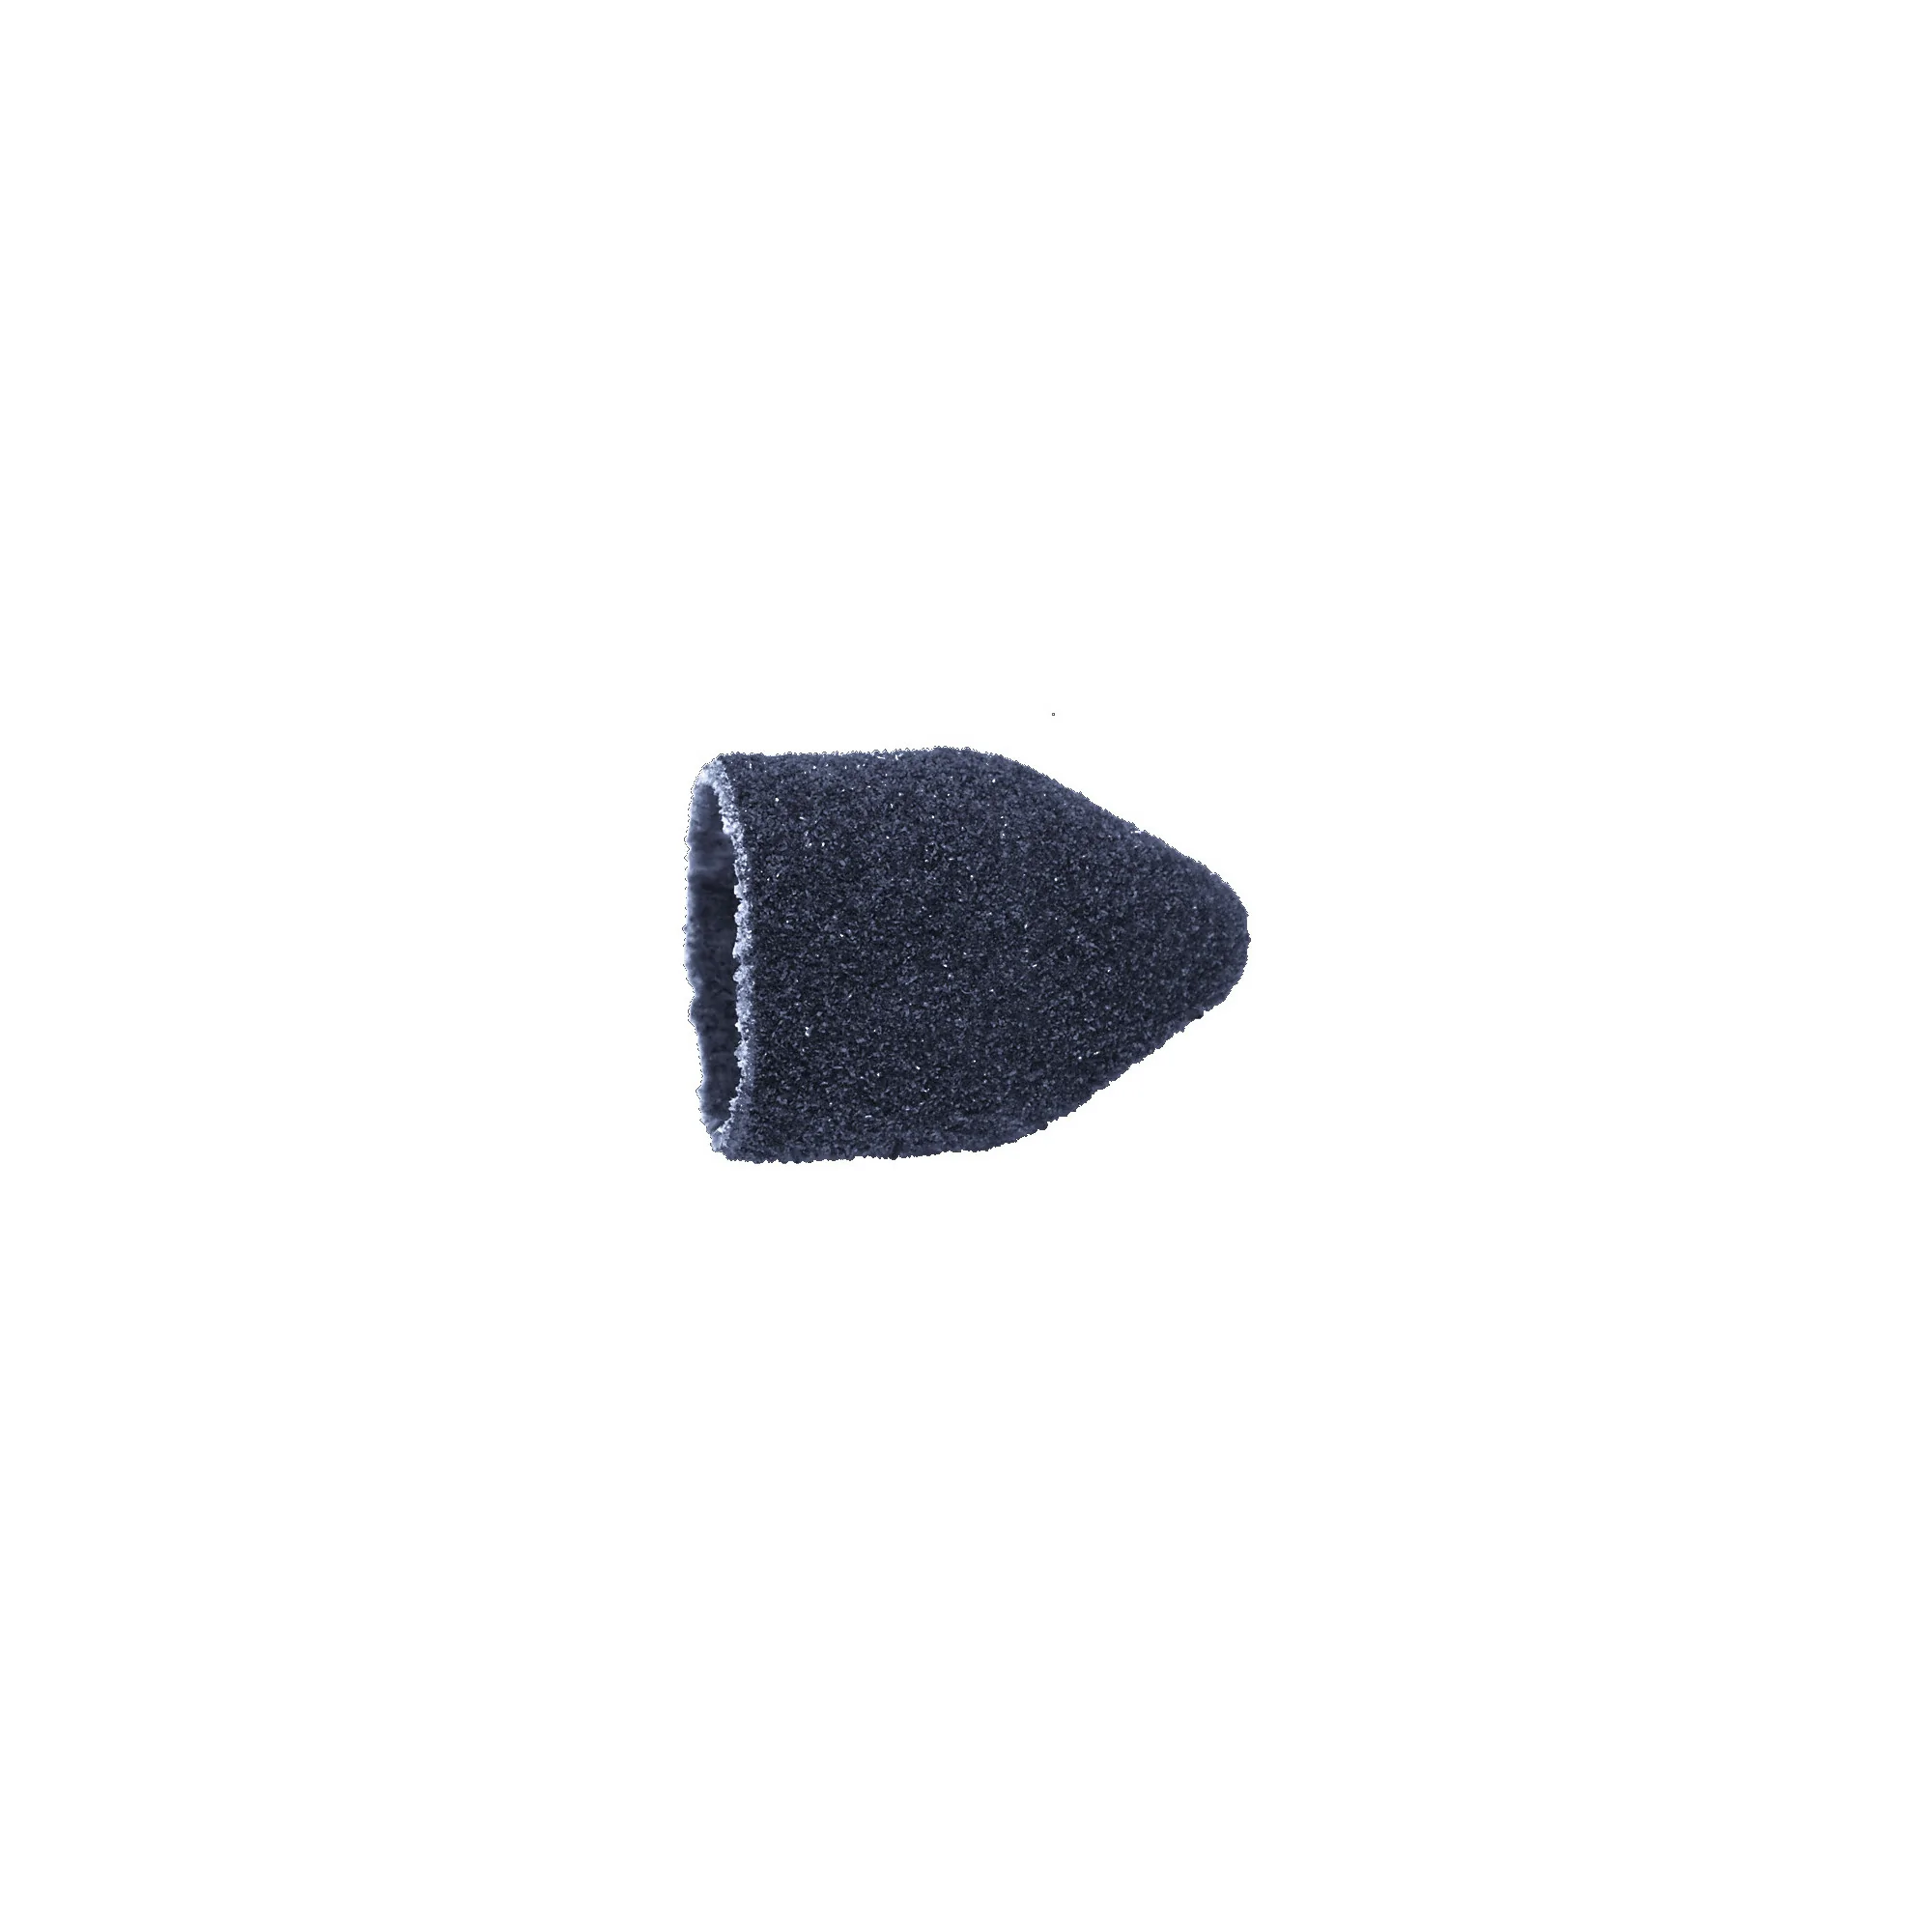 Capuchons abrasifs pointus x10 1002 - Diamant - Grain moyen - Abrasion des cors, durillons et hyperkératoses - 10 mm